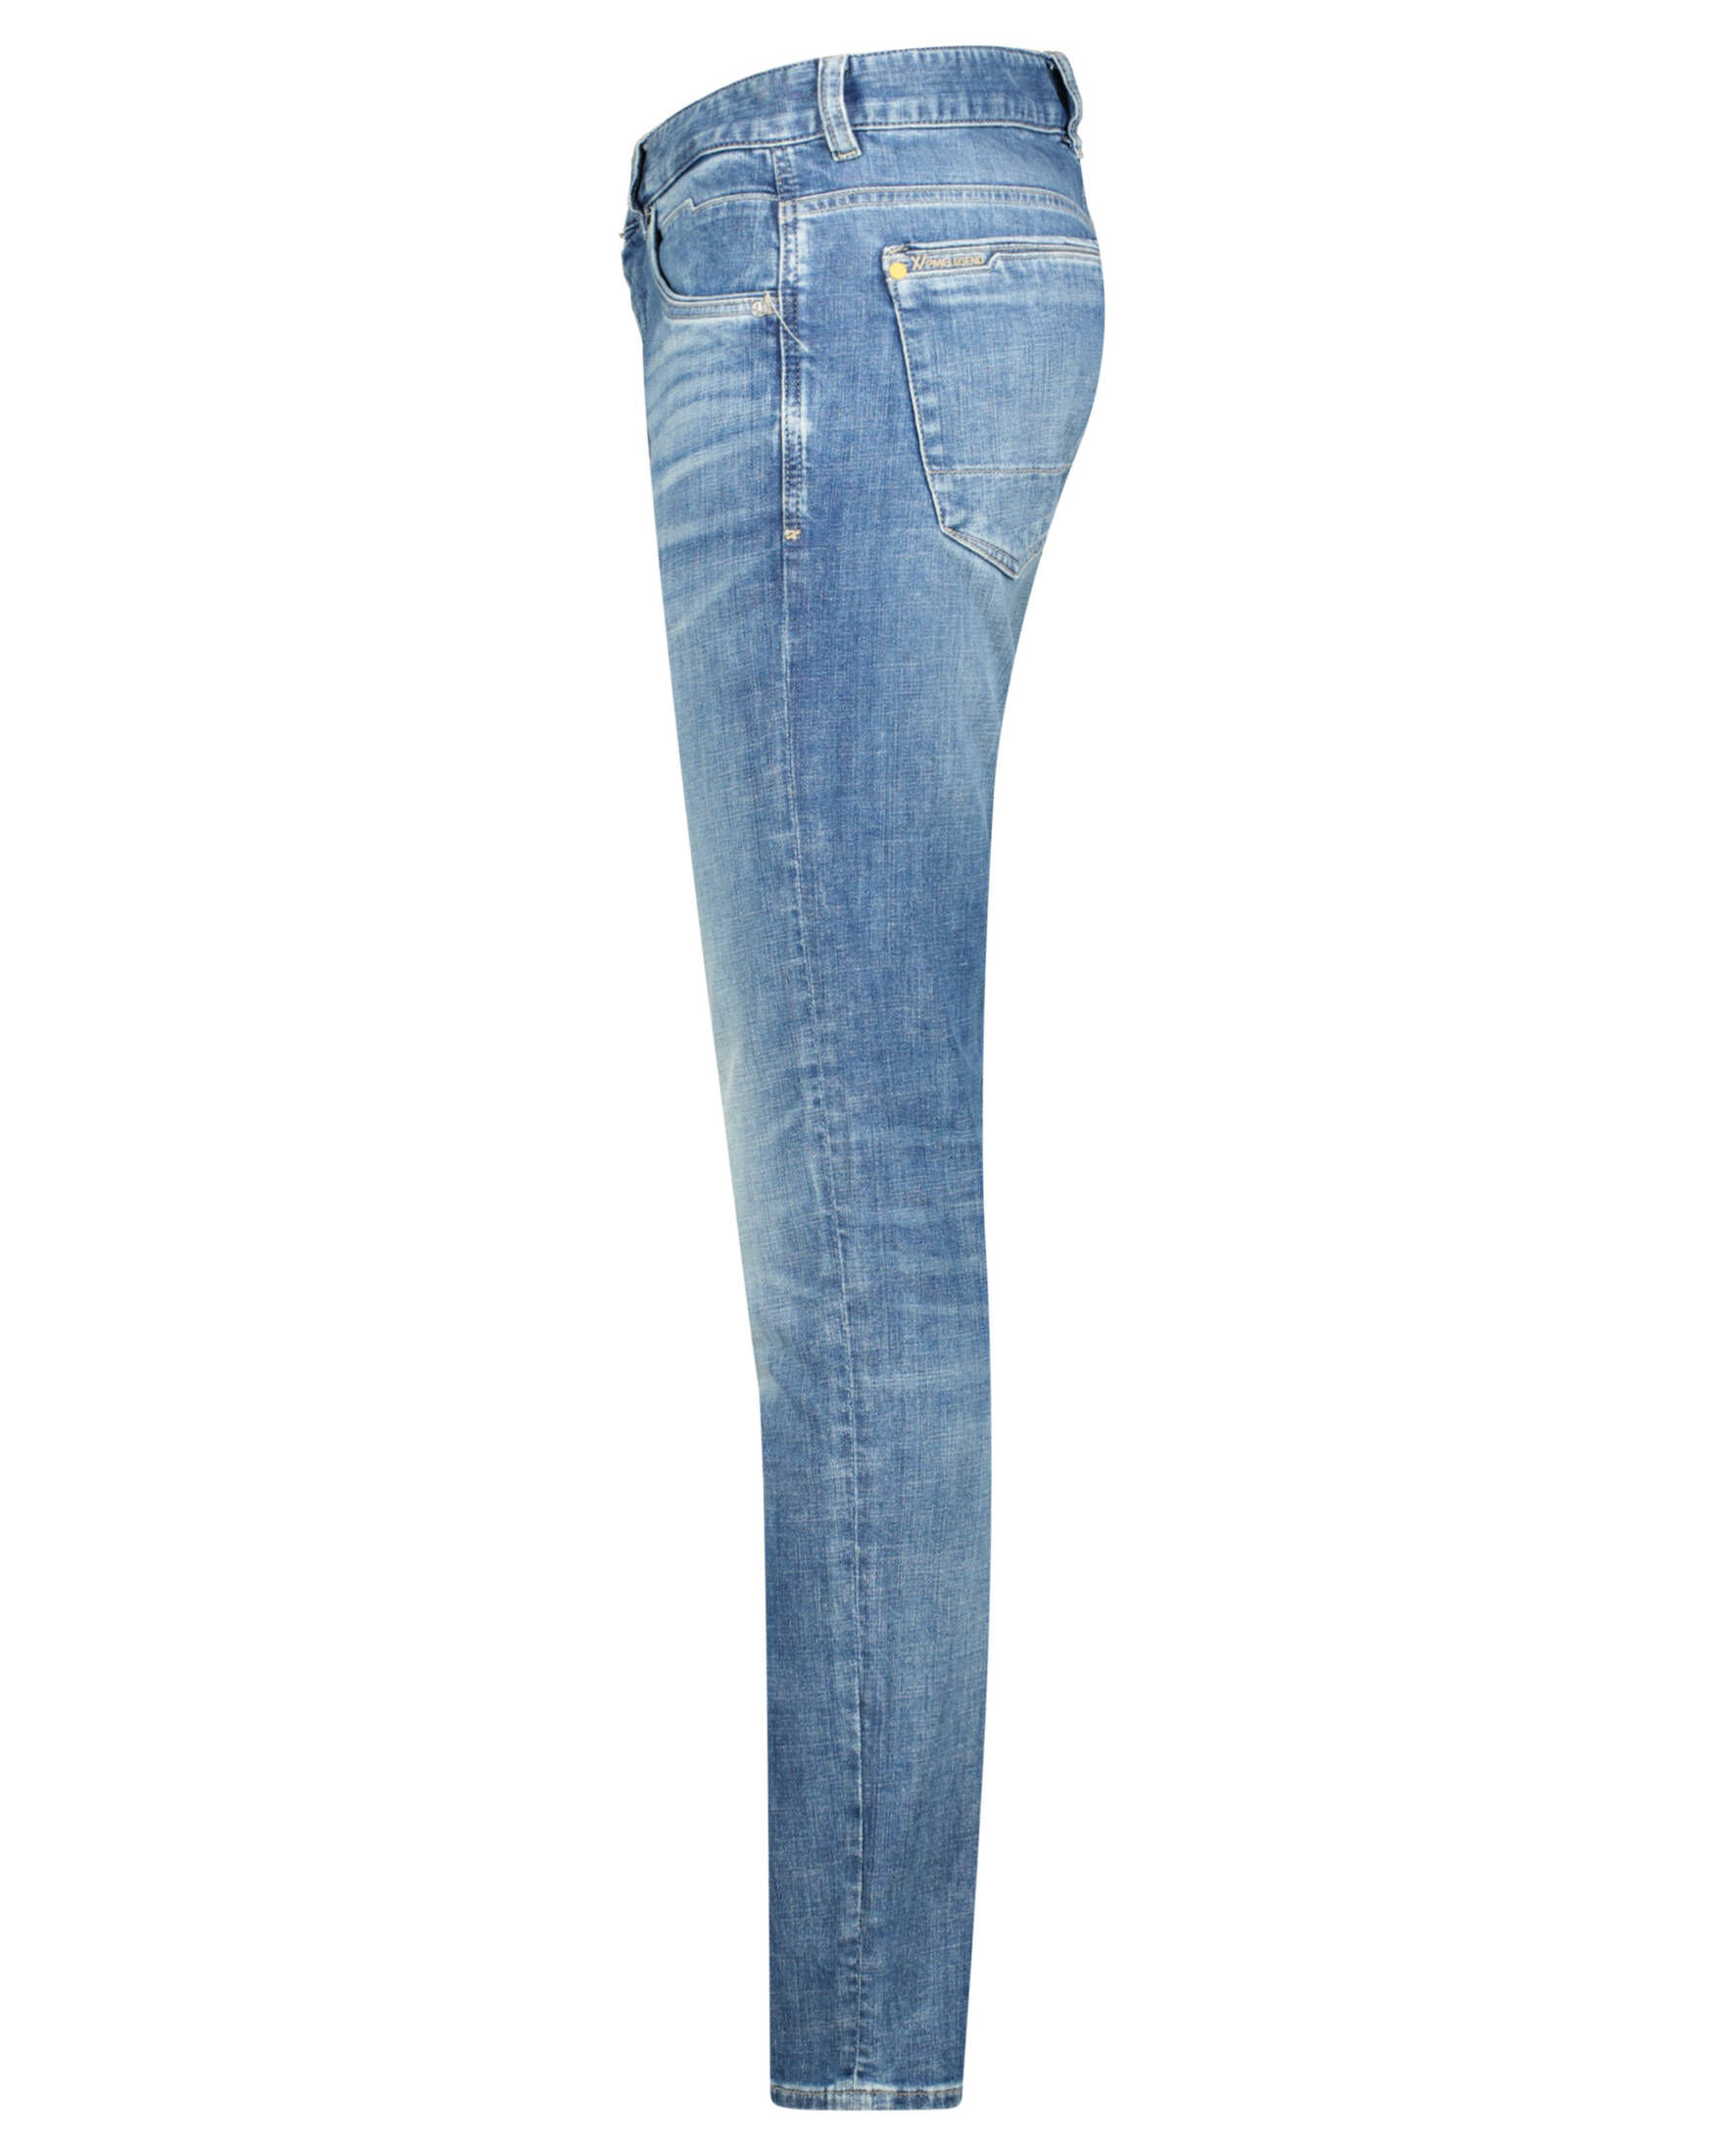 DENIM BRIGHT Herren PME BLUE kaufen AIR Jeans | Fit Legend Slim engelhorn XV